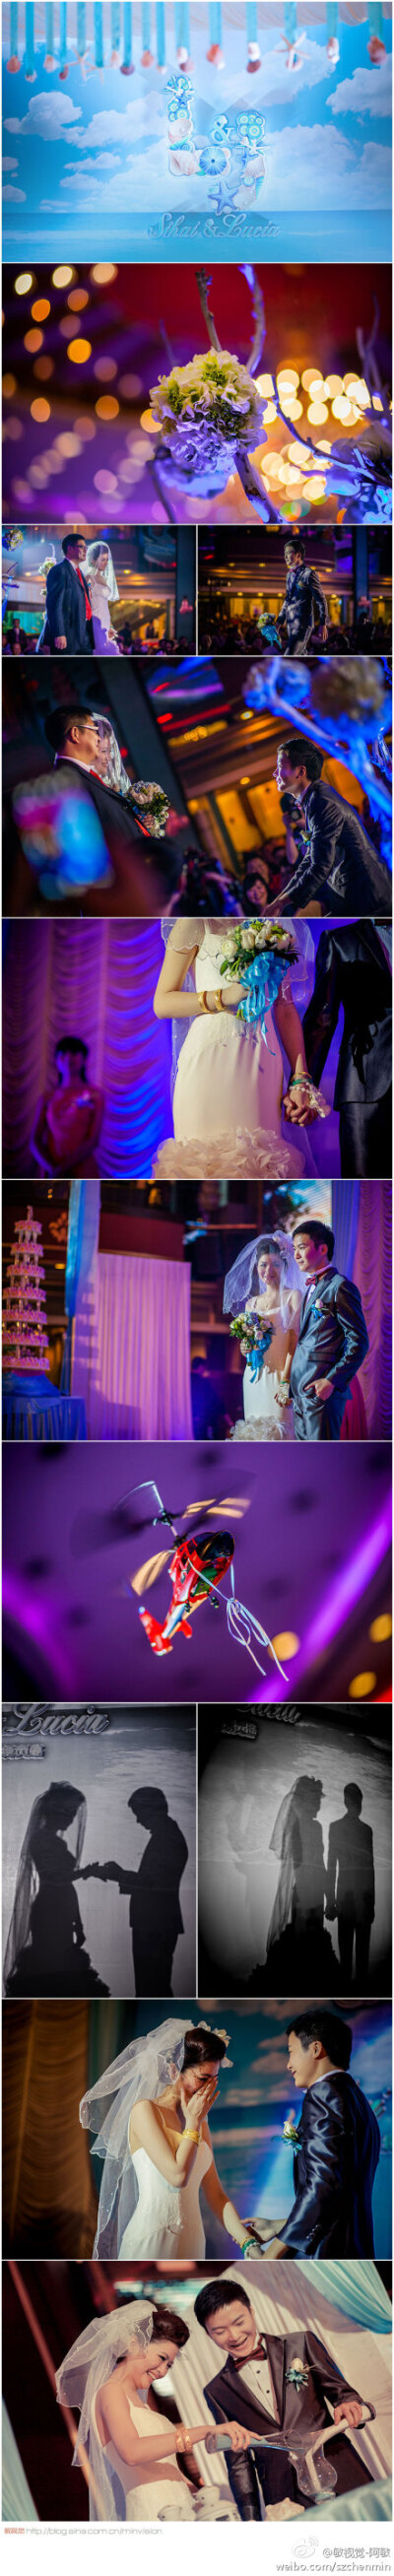 @敏视觉-阿敏 ： 婚礼仪式中，经常会遇到LED灯的麻烦，红，蓝，紫色等对数码相机都可谓是灾难。作为摄影师，我们无法选择现场的光线，我们要做到的就是尽量还原现场气氛的情况下，在拍摄和后期制作中，体现我们的专…